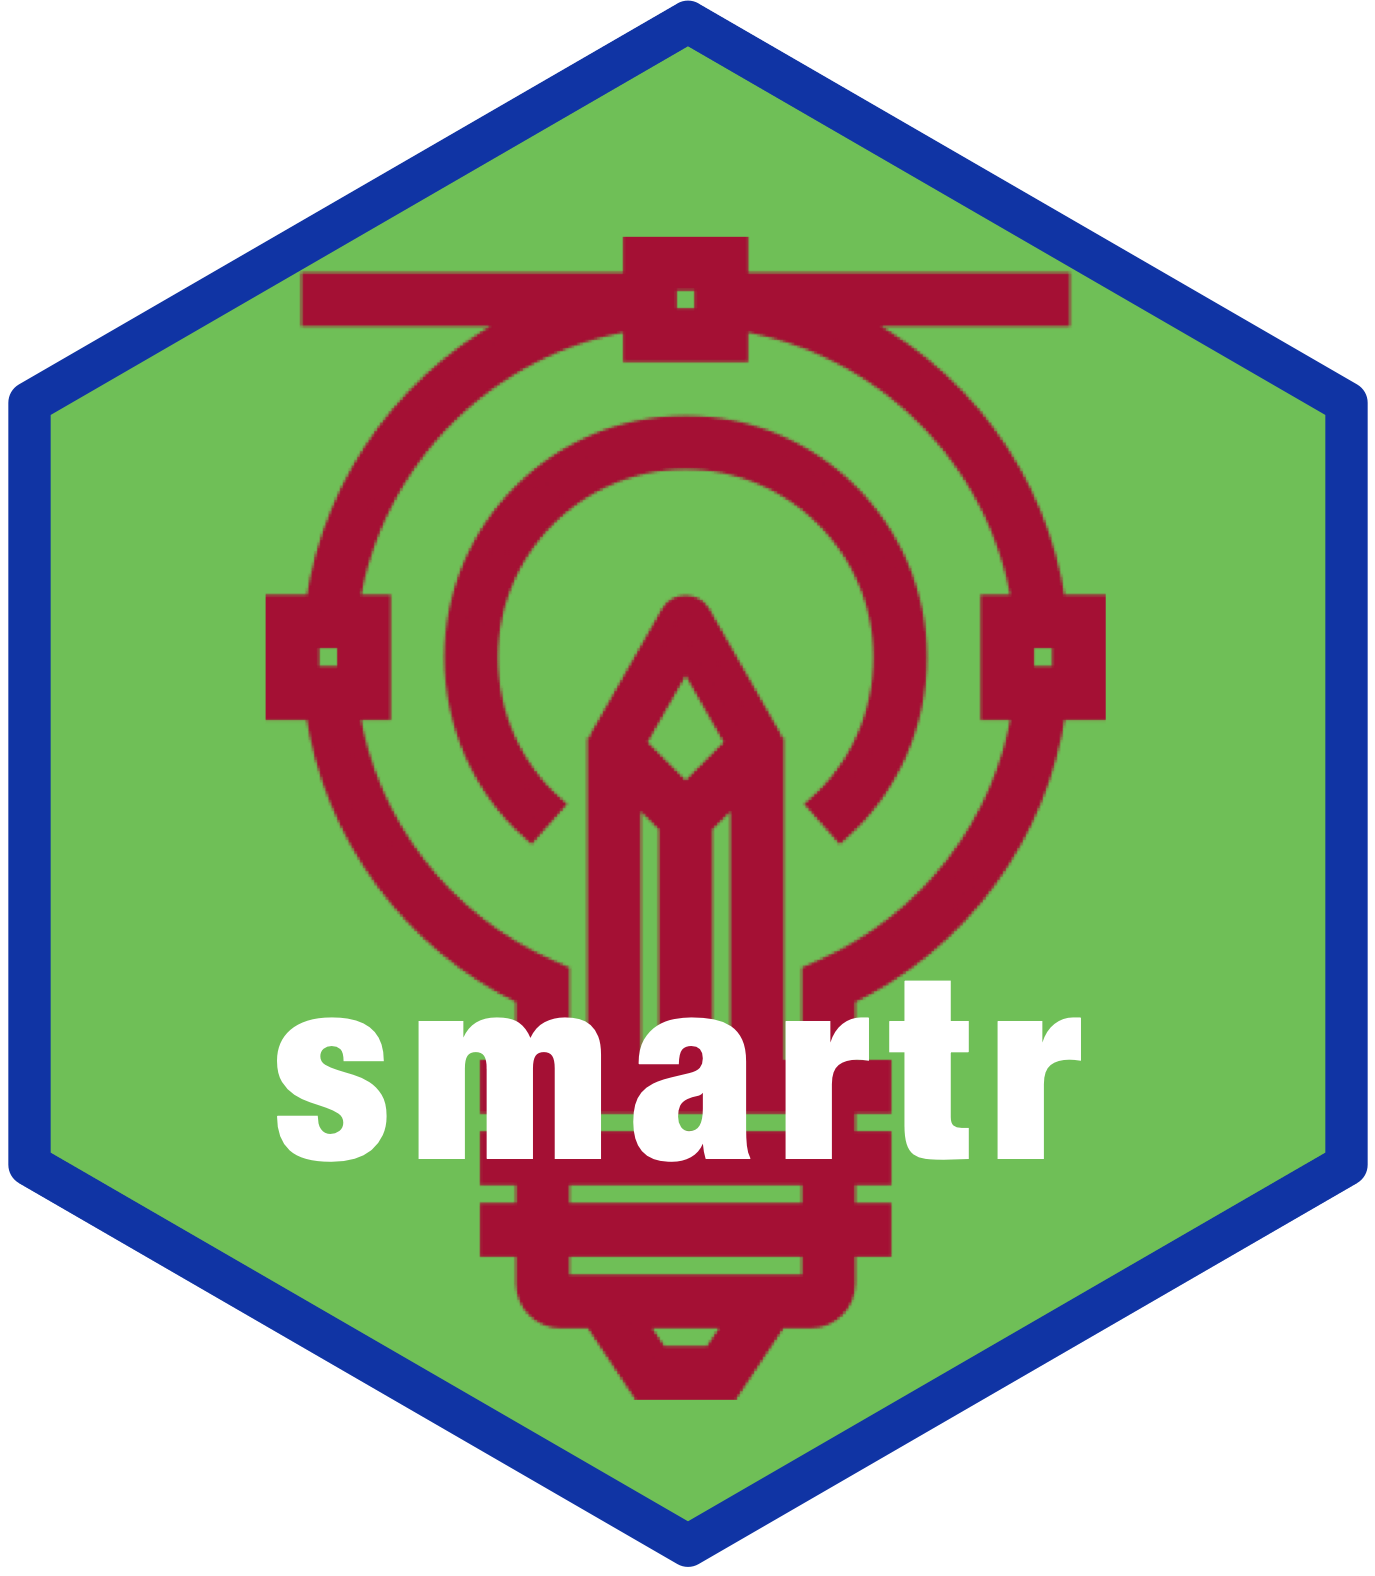 smartr hex sticker